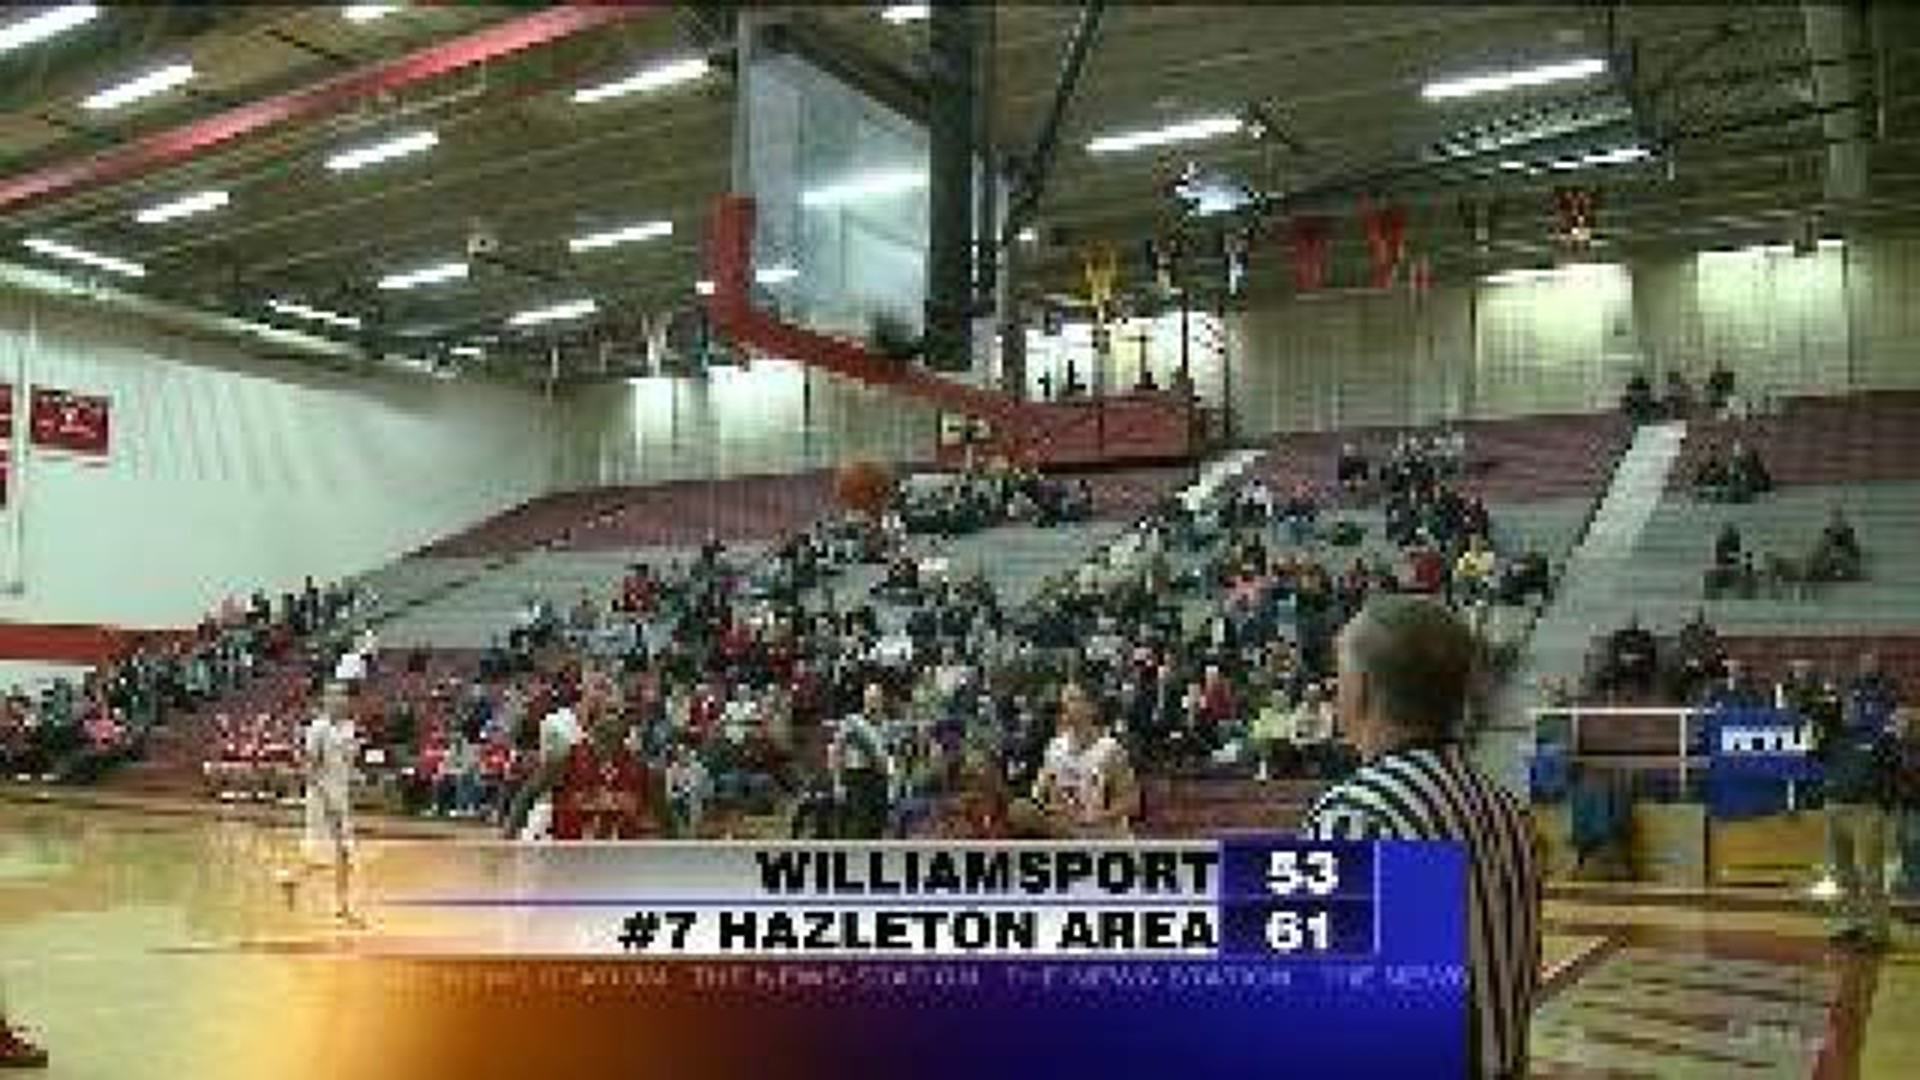 #7 Hazleton Defeats Williamsport